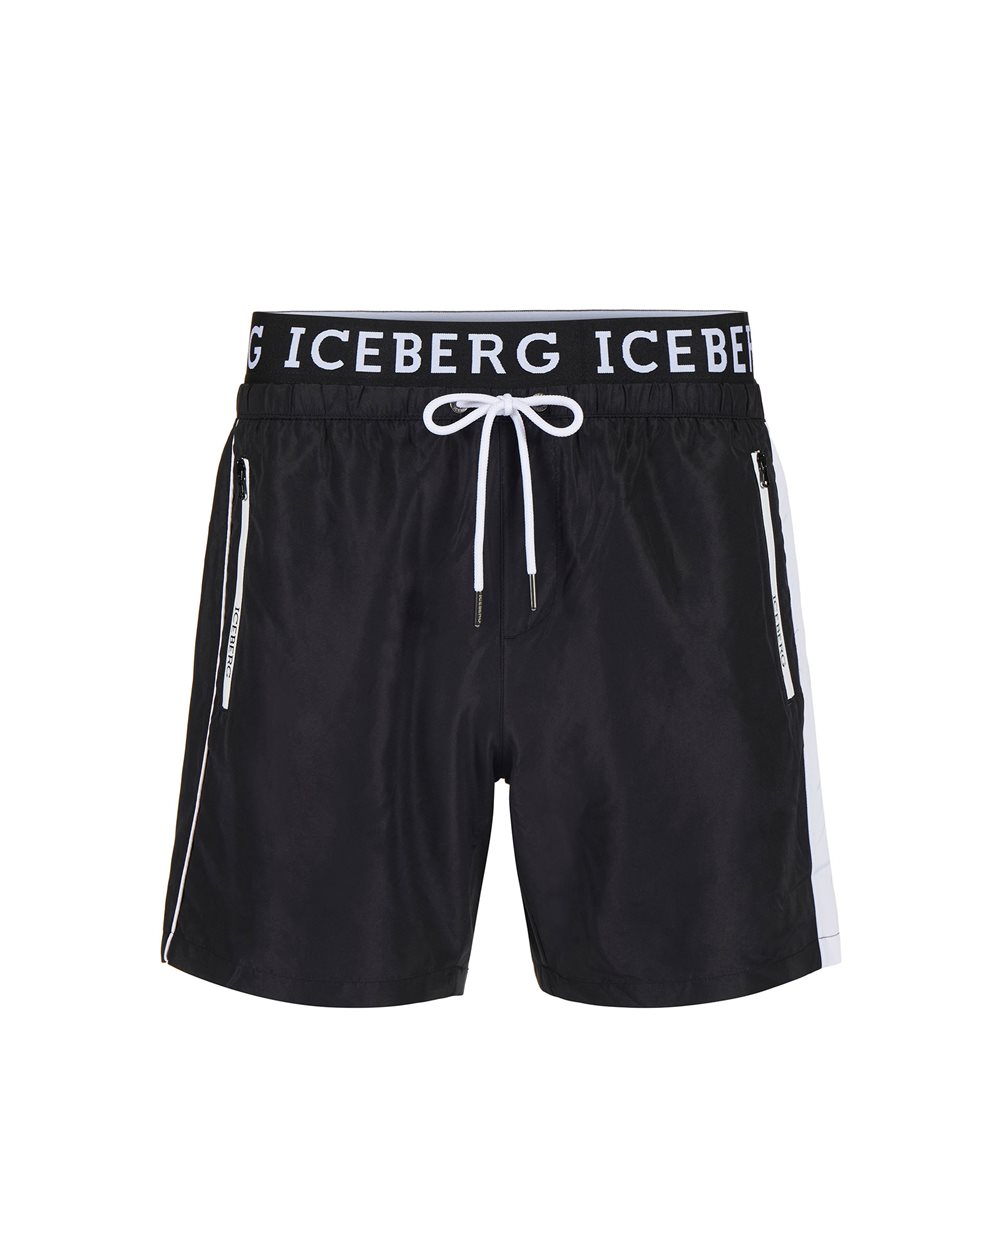 Swim trunks with logo -  ( SECONDO STEP DE ) PROMO SALDI UP TO 40% | Iceberg - Official Website